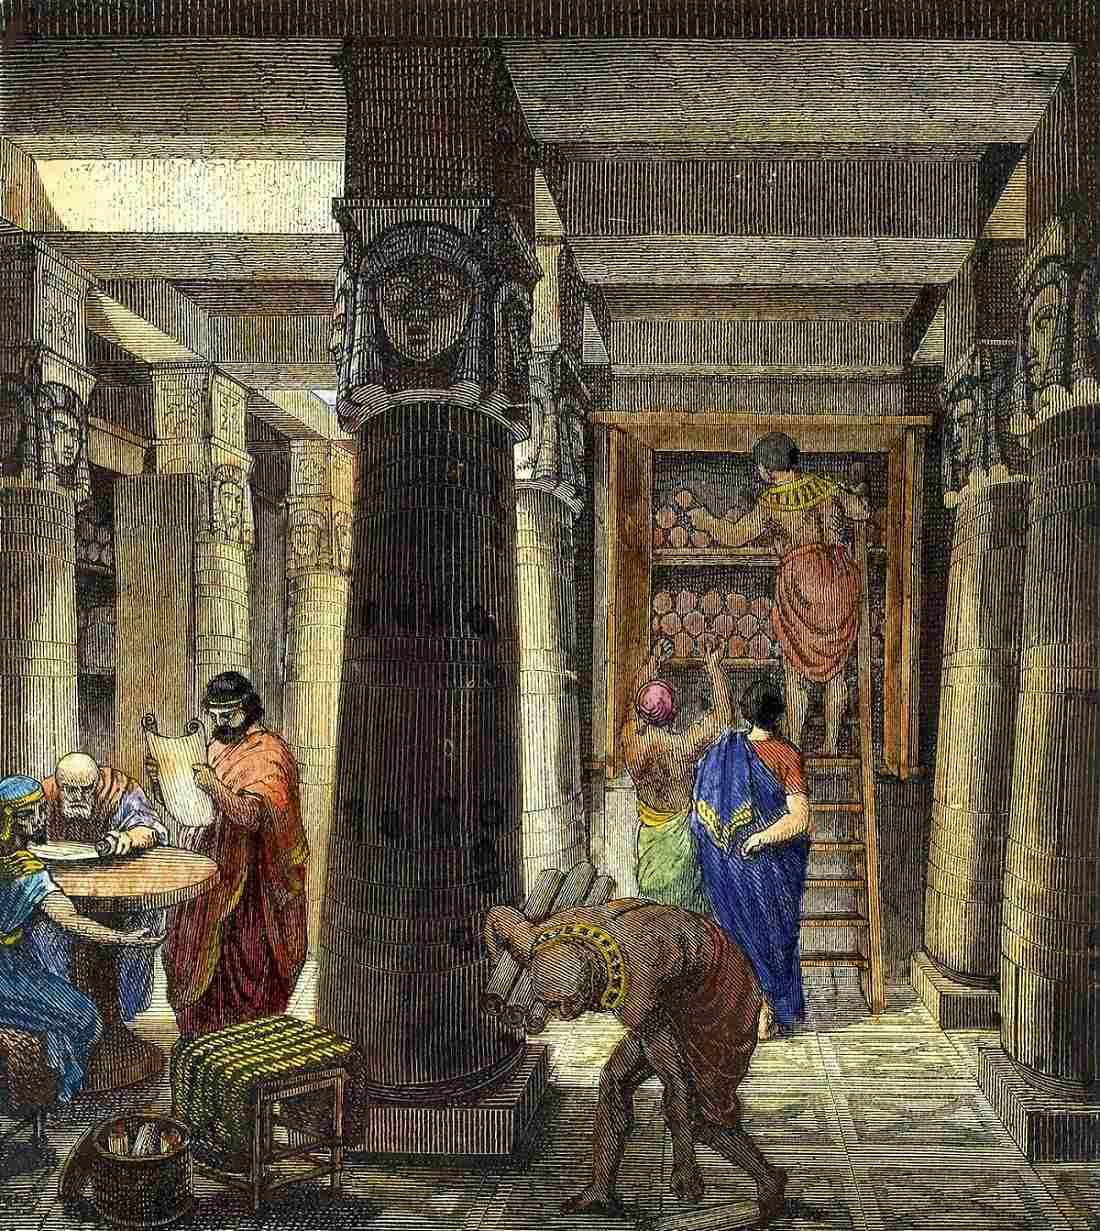 Thư viện Ashurbanipal: Thư viện lâu đời nhất được biết đến đã truyền cảm hứng cho Thư viện Alexandria 2